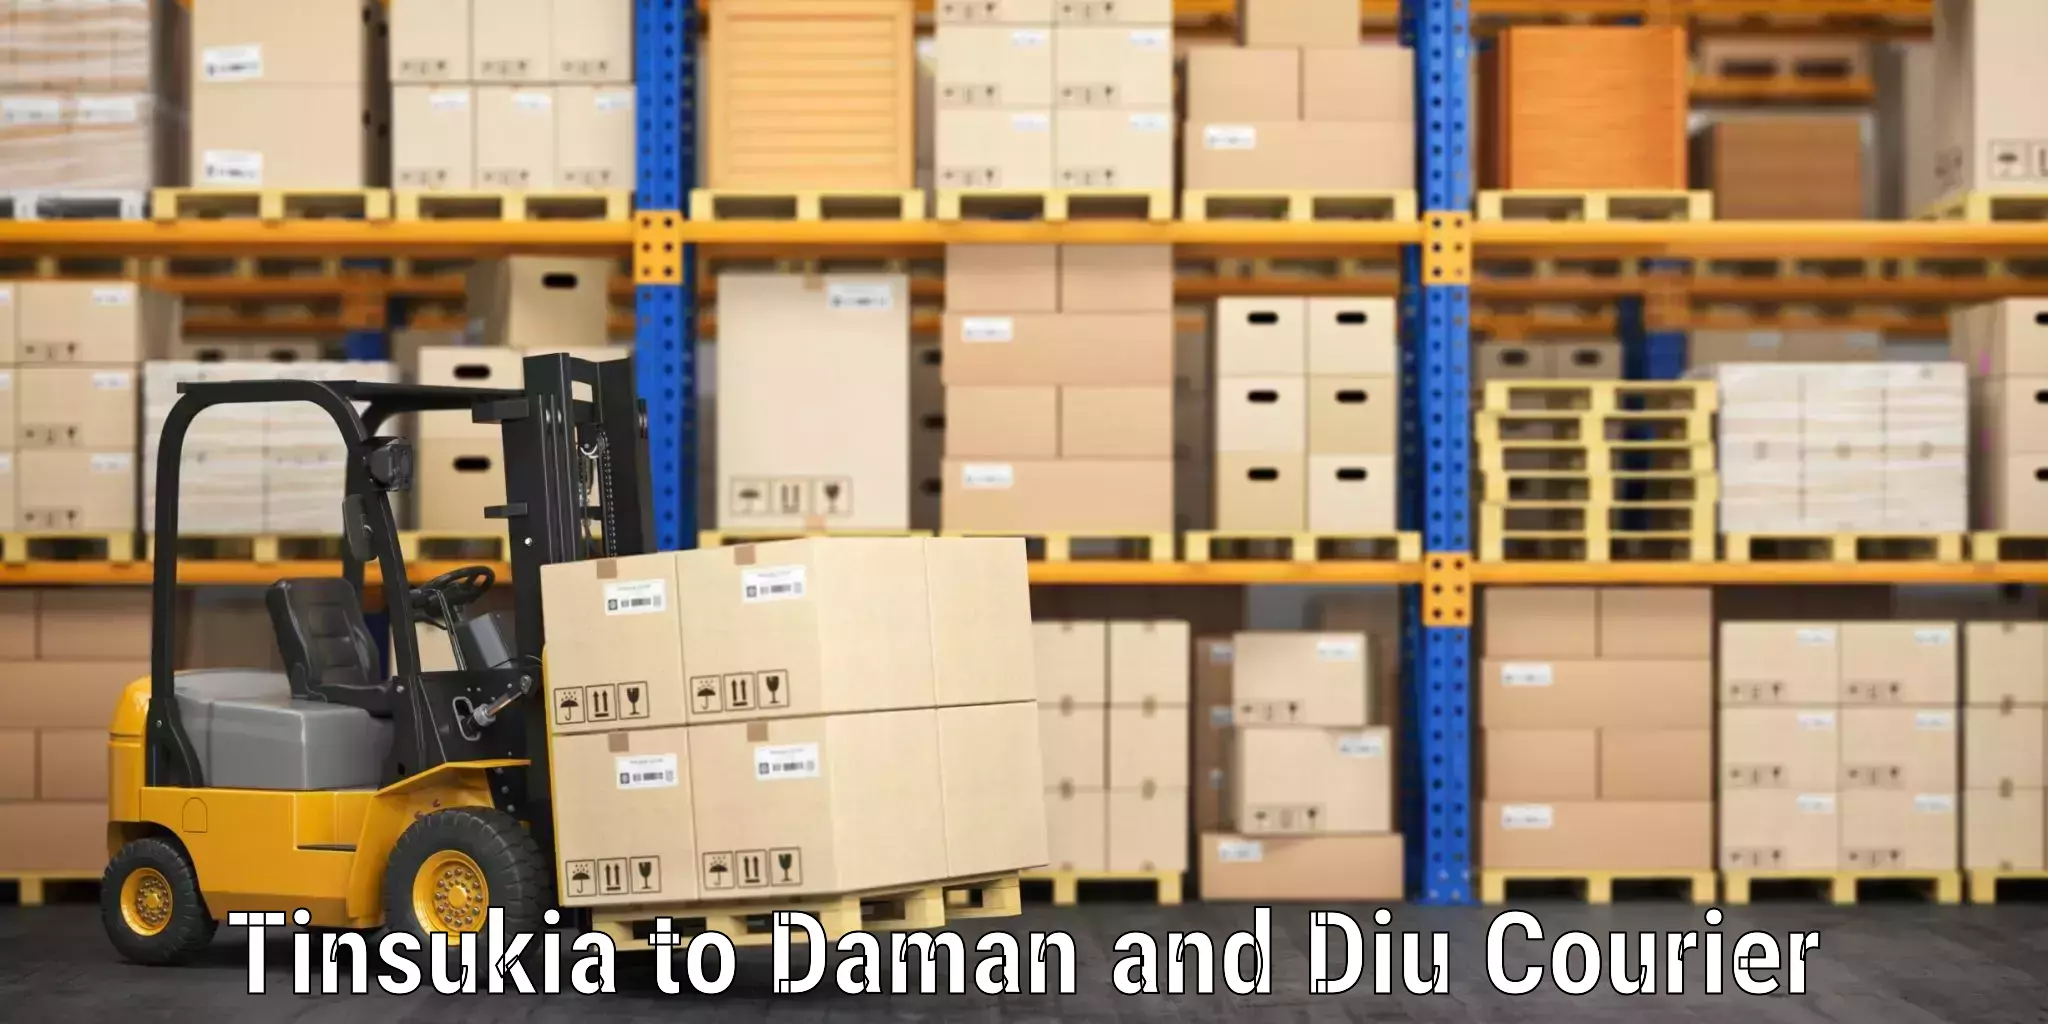 Luggage shipping rates calculator Tinsukia to Daman and Diu